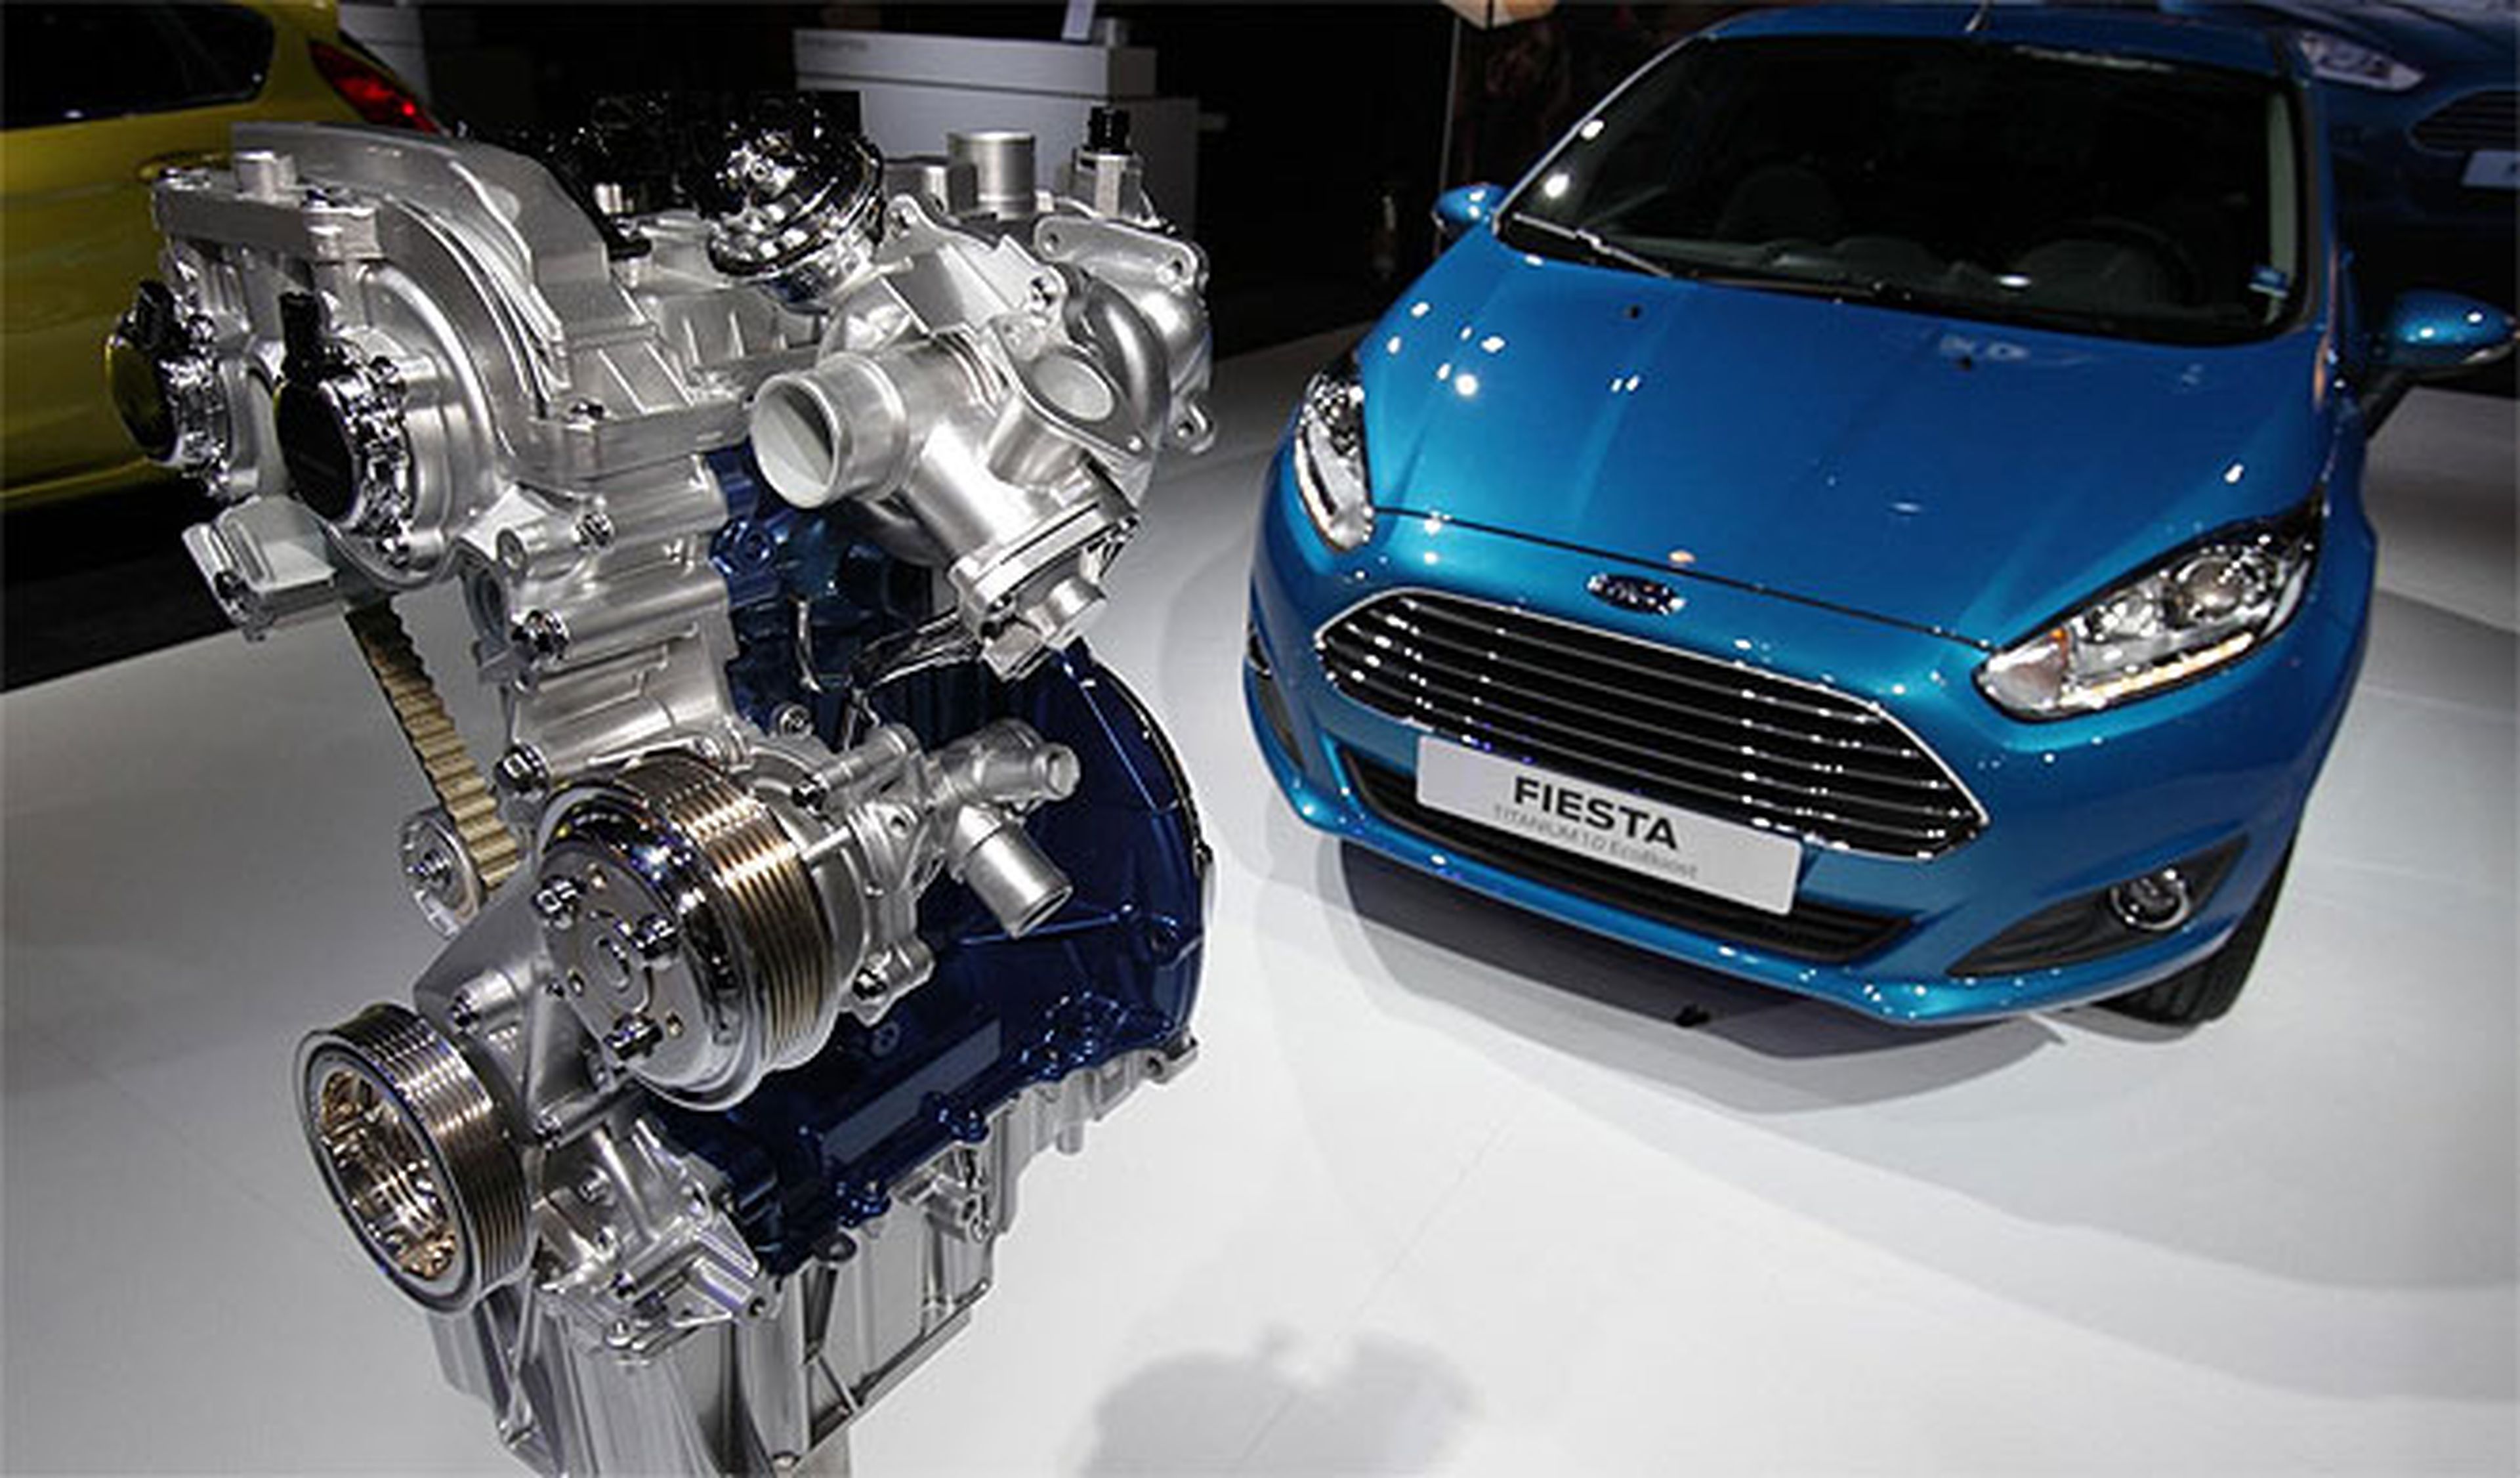 Lo último de Ford: motores más ruidosos para gastar menos